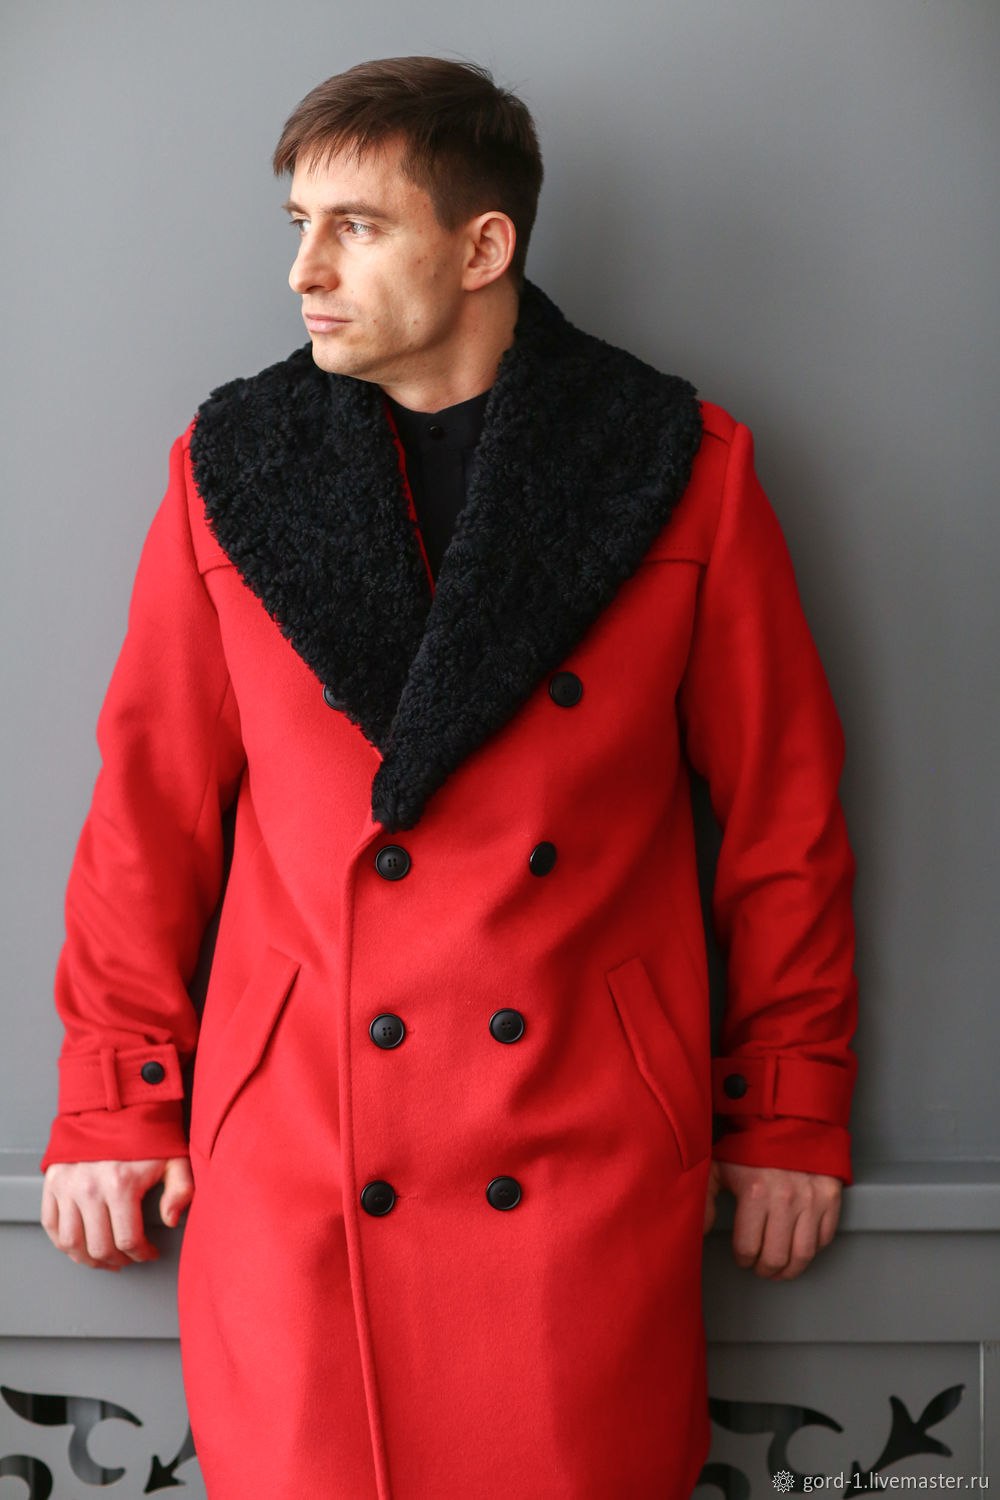 Меховое пальто мужское купить. Пальто фирмы Avalon мужское бушлат. Пальто мужское s Mehom. Пальто мужское зимнее. Красное пальто мужское.